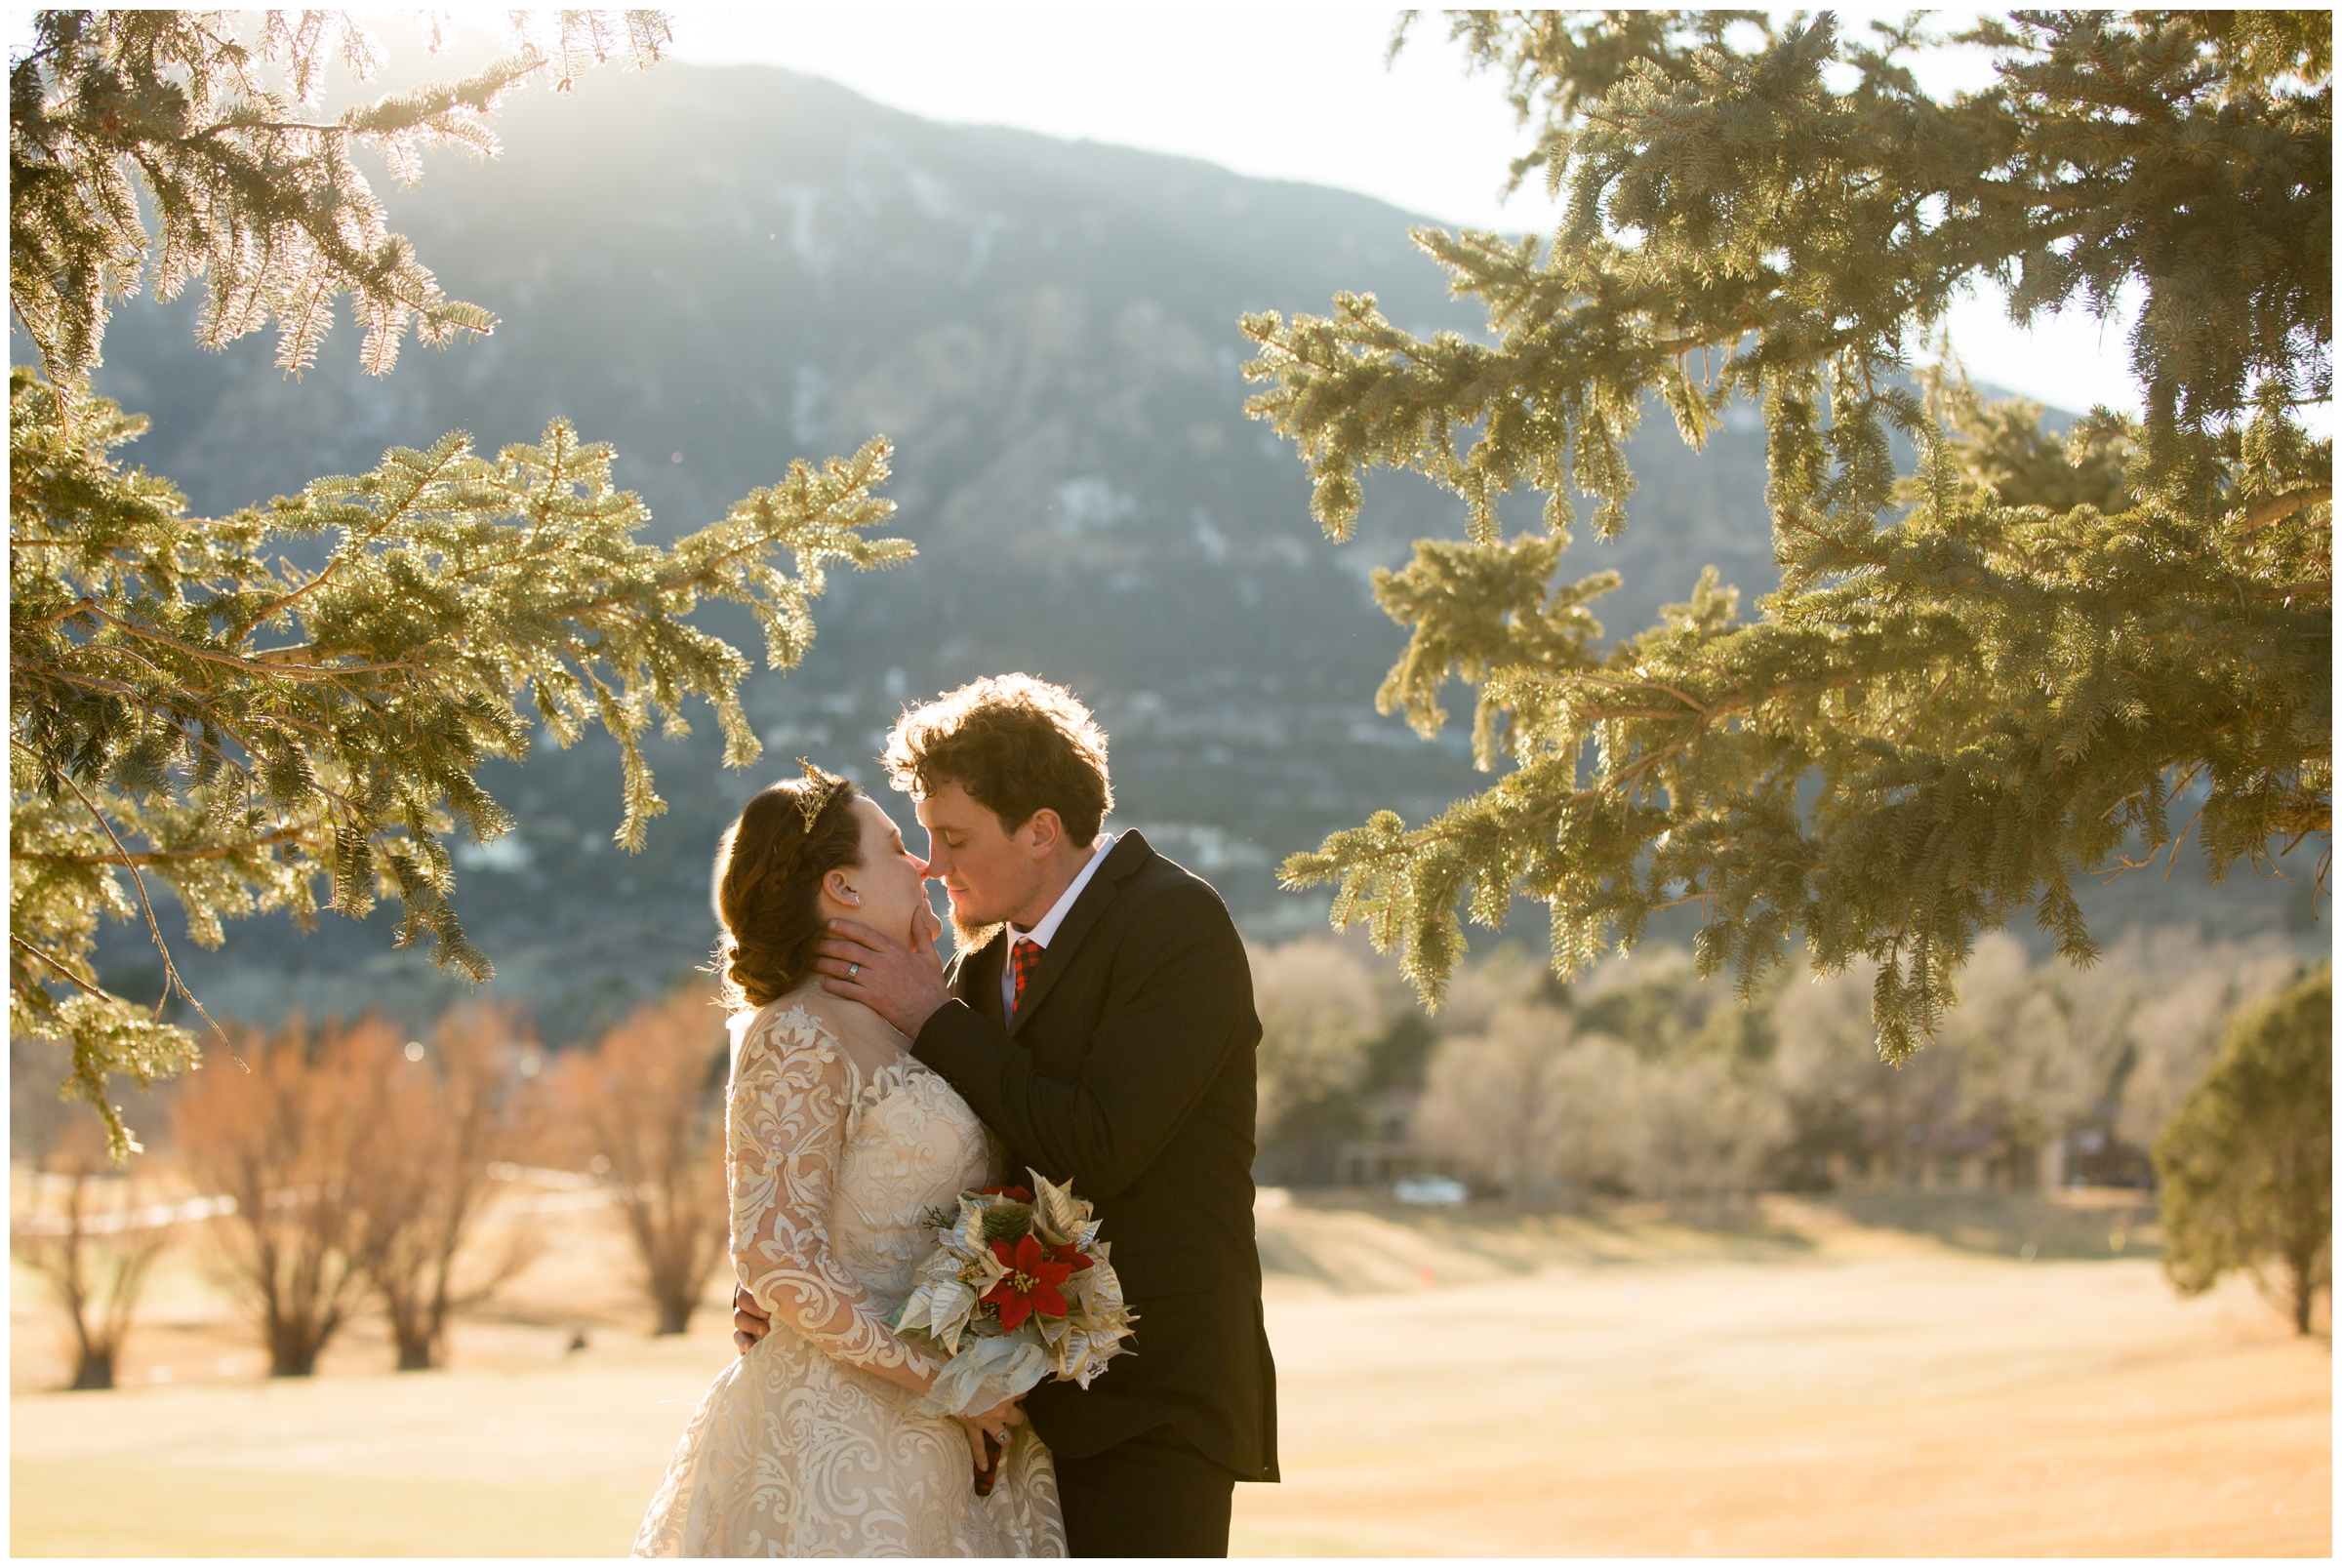 sunny winter wedding photos on a golf course in Colorado Springs